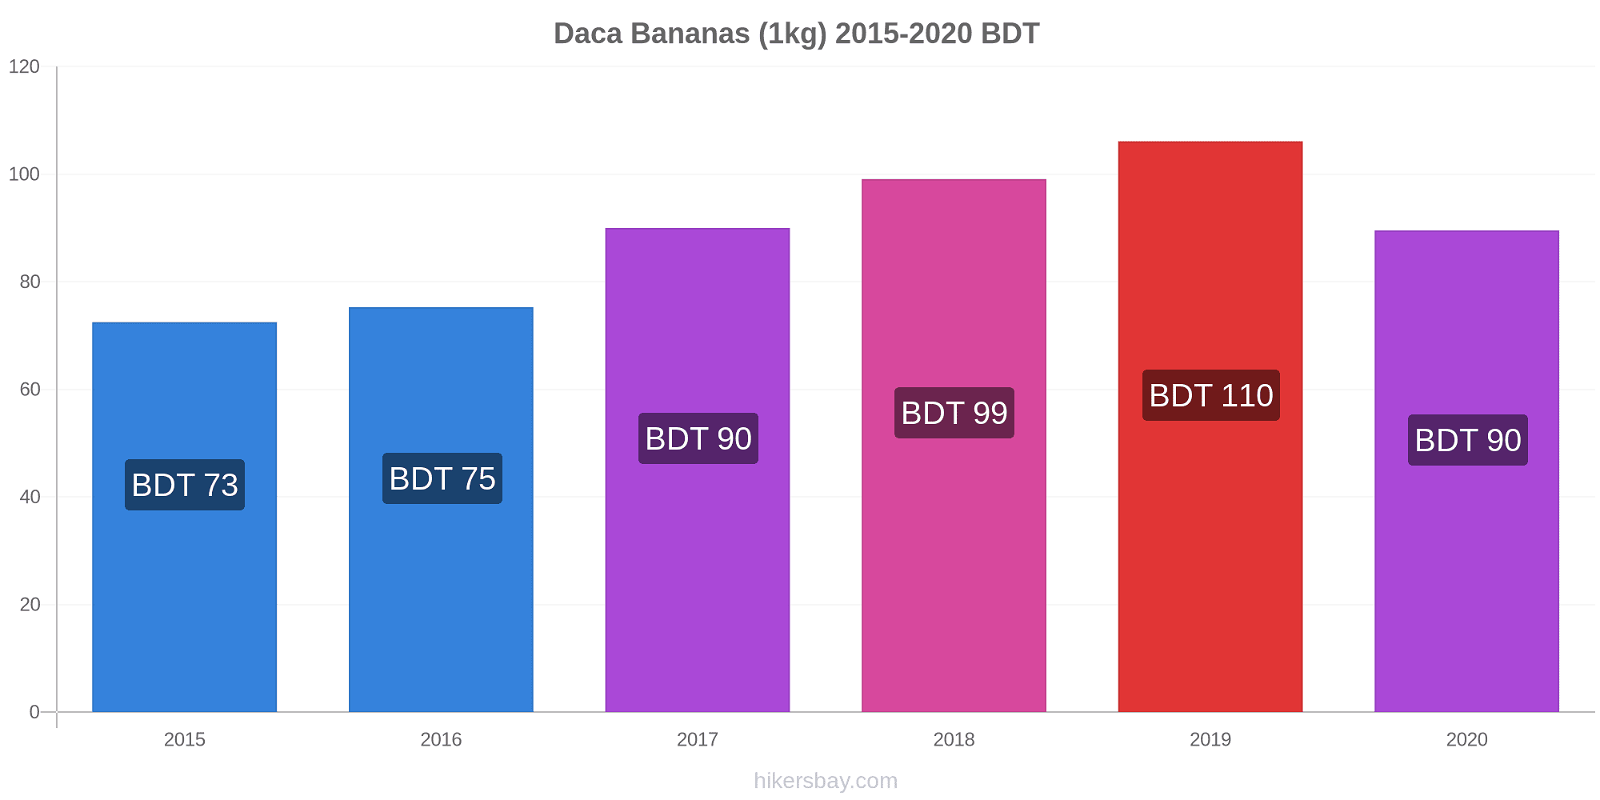 Daca variação de preço Banana (1kg) hikersbay.com